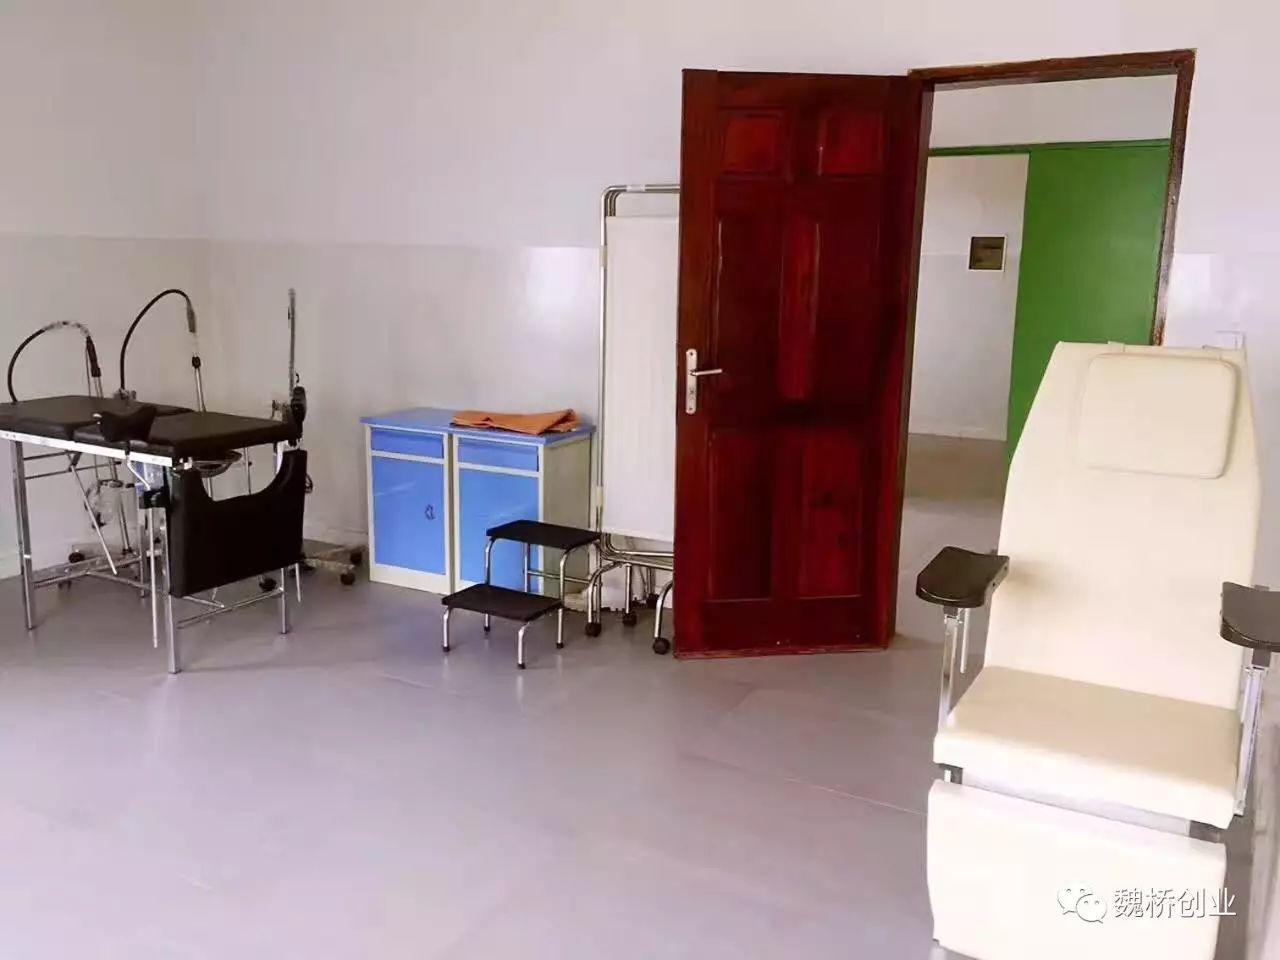 赢联盟造福几内亚当地民众义举不断，捐赠的博凯Katougouma医疗中心投入使用